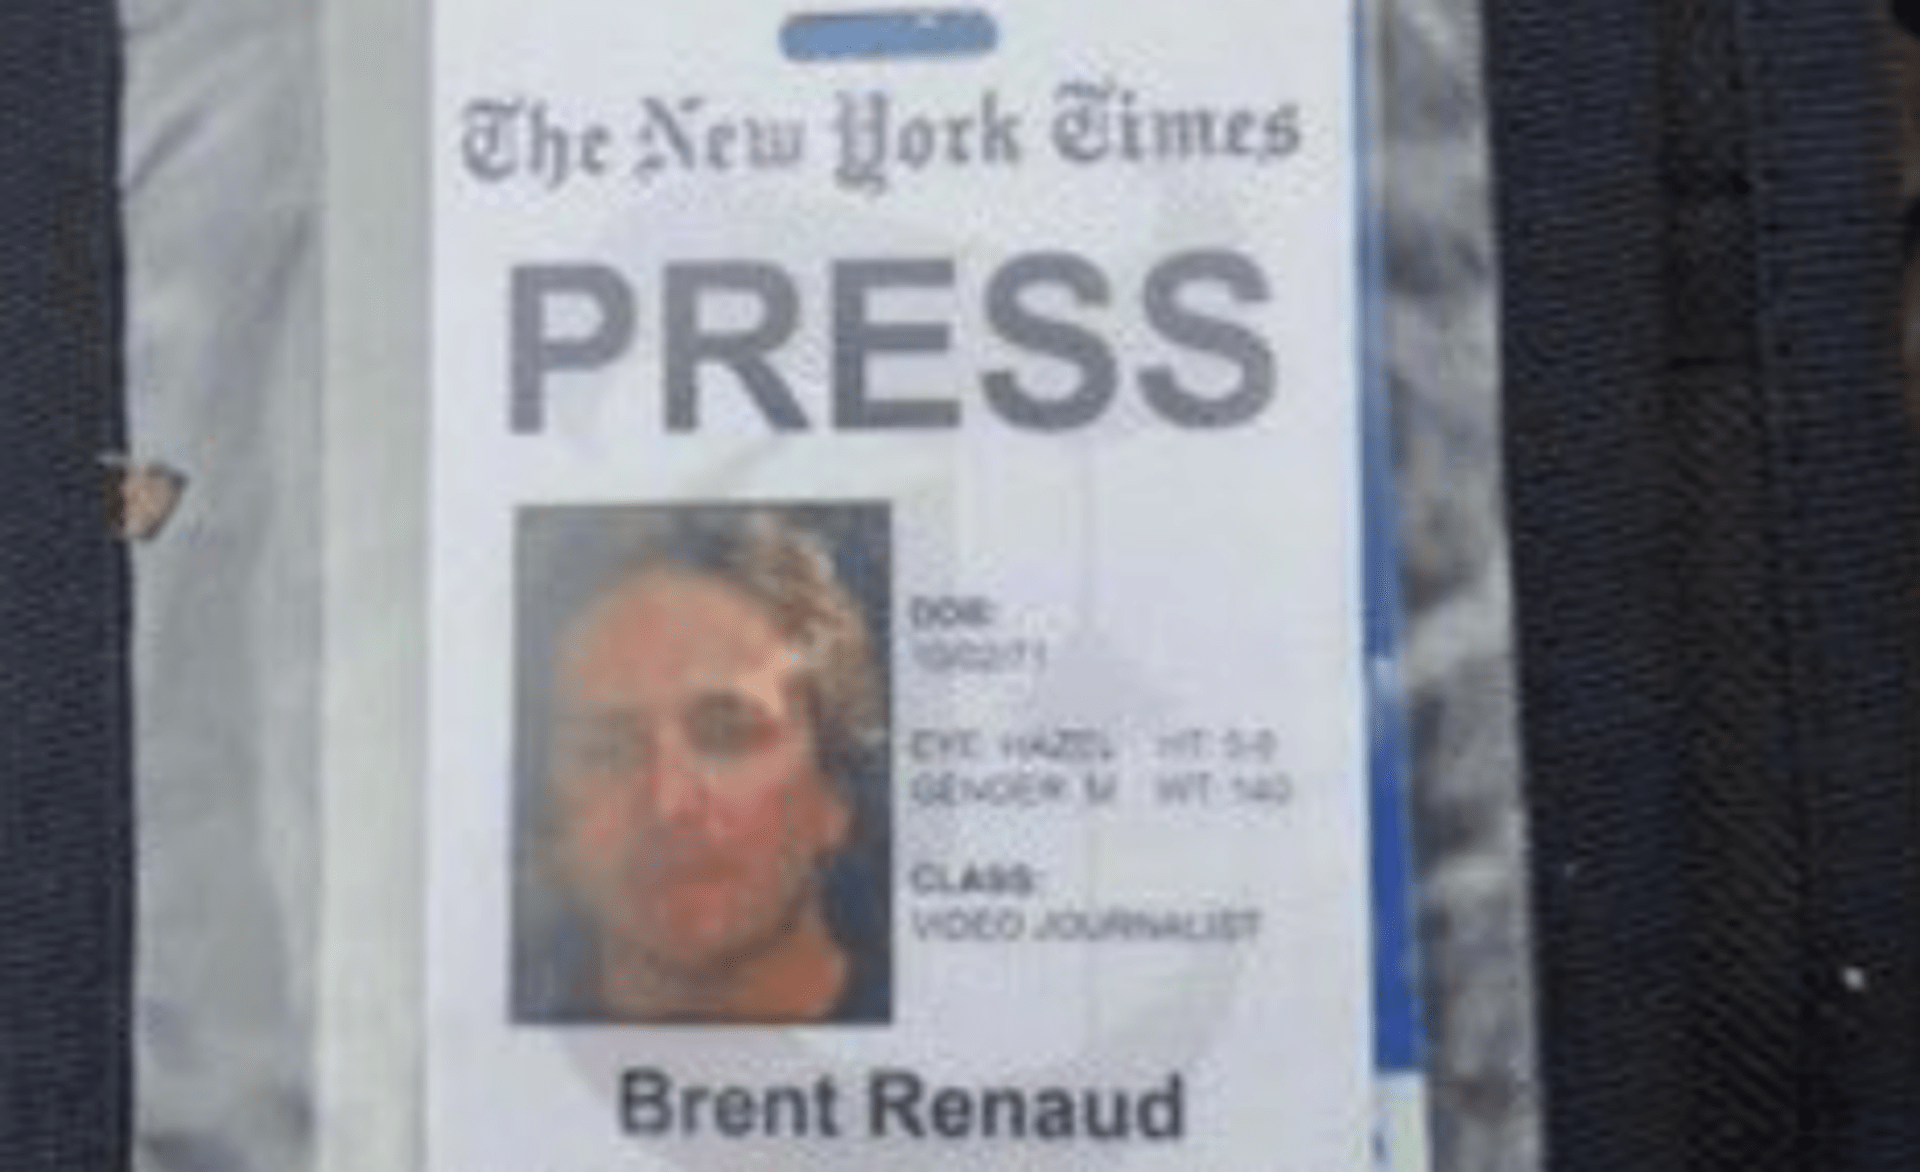 Novinářská průkazka zastřeleného reportéra The New York Times